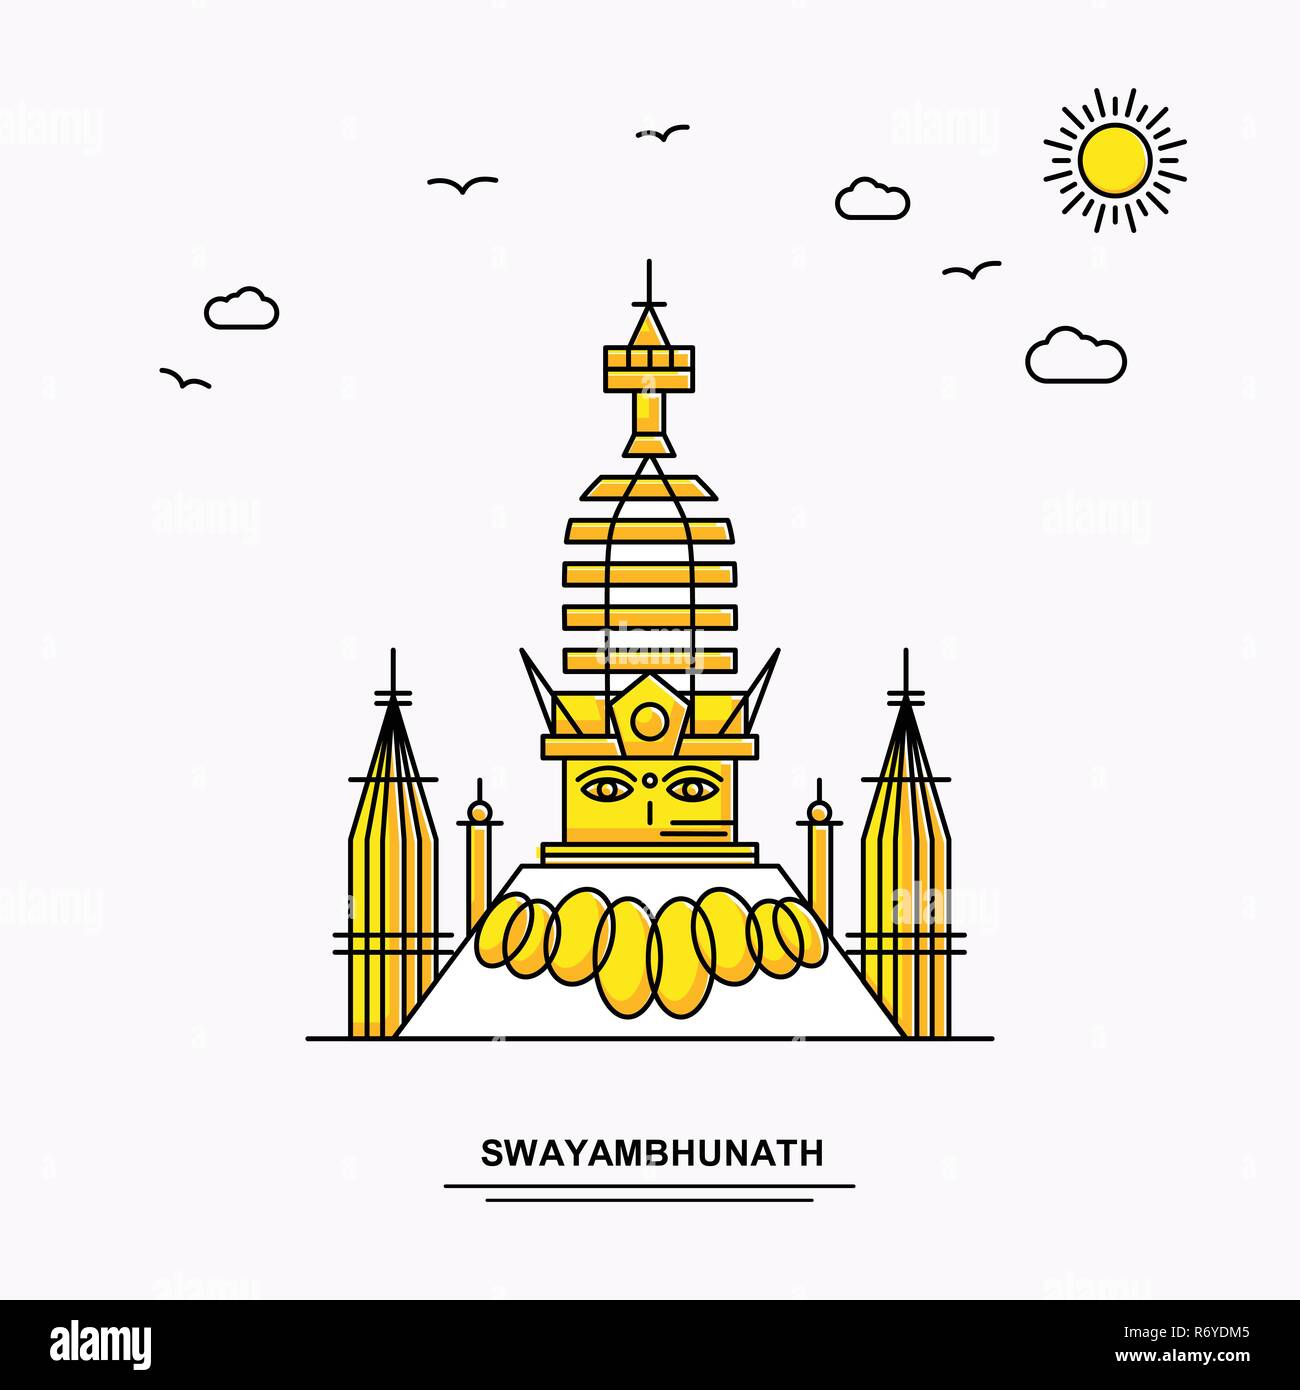 Monument de SWAYAMBHUNATH Modèle d'affiche. Illustration jaune Voyage du Monde historique en style de ligne avec beauture parlons nature Illustration de Vecteur